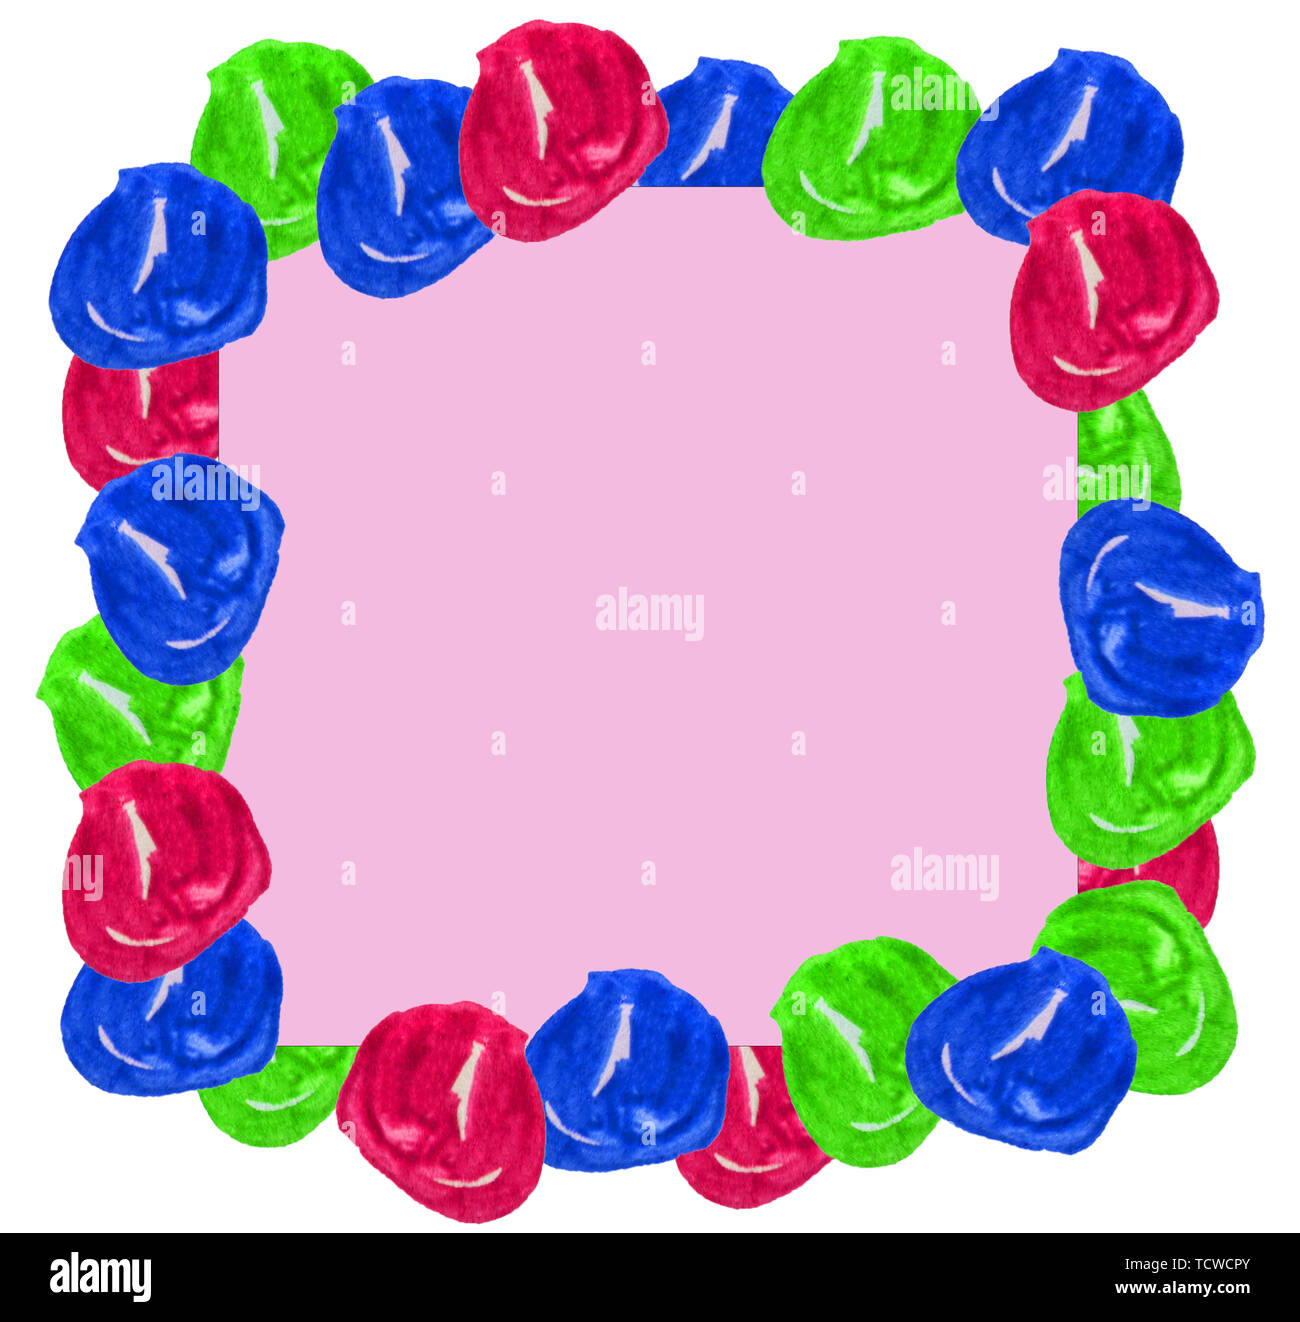 Cute aquarell Frame Set bunte Hand gezeichnet Kugeln isoliert runde Flecken auf rosa Hintergrund für Text, Gestaltung, Web. Platz für Hinweis, Drucken, Vorlage Stockfoto